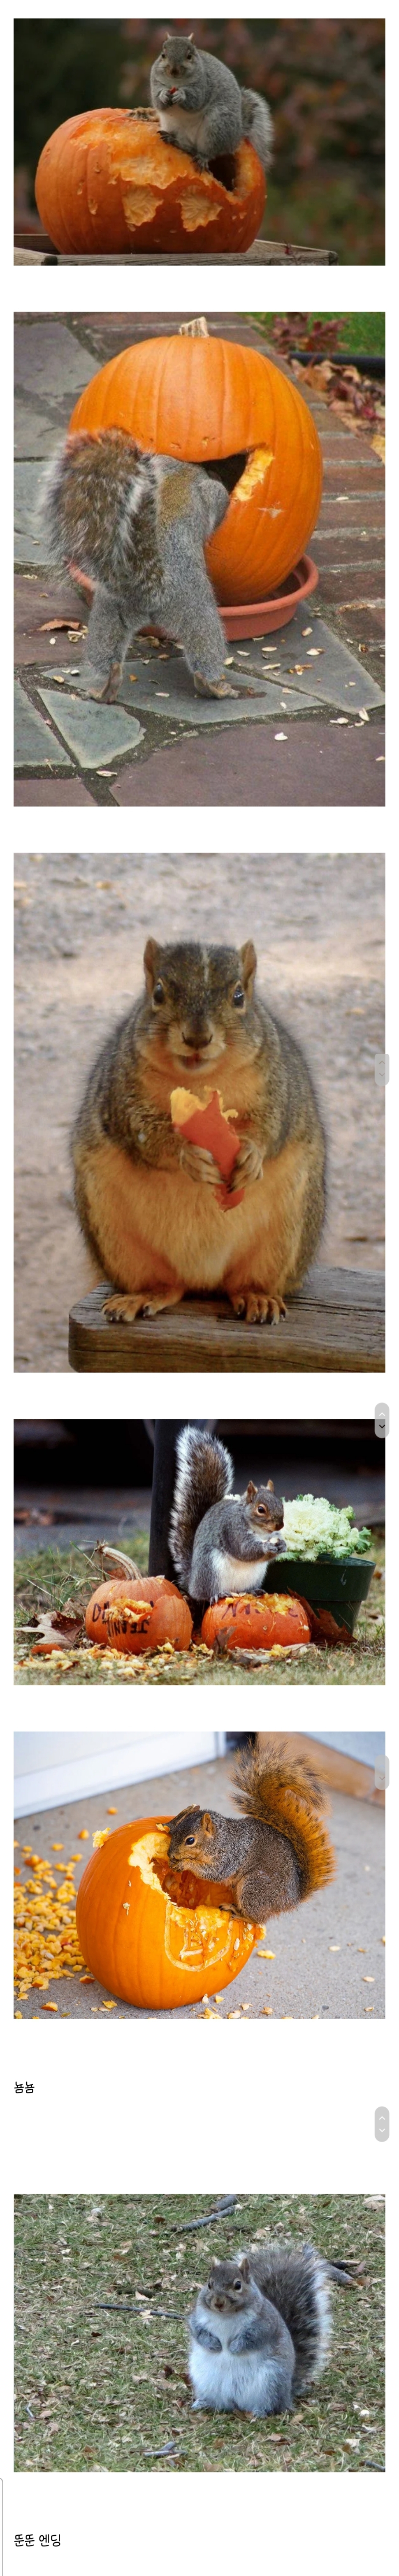 할로윈때 서양다람쥐들이 뚱뚱해지는 이유